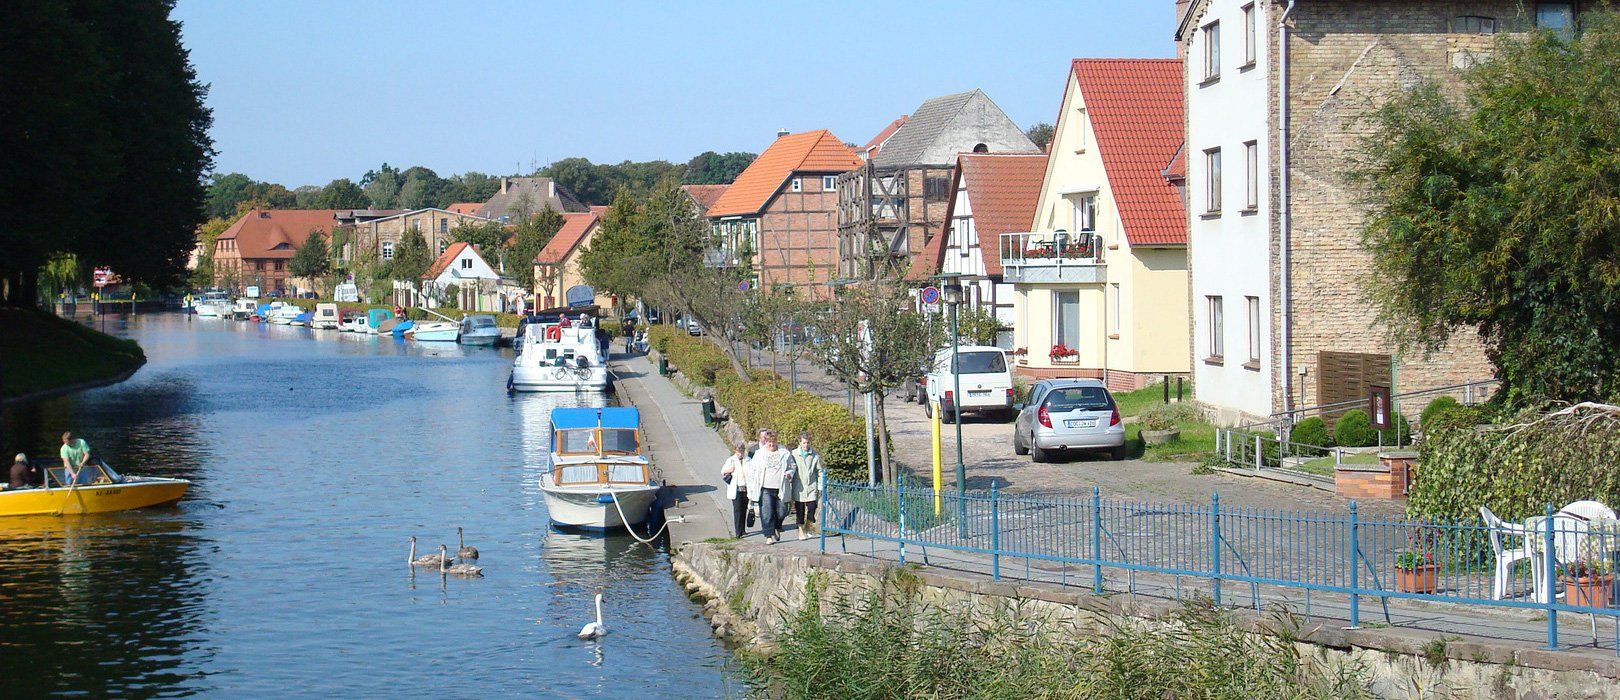 Alt Schwerin mecklenburg lake district